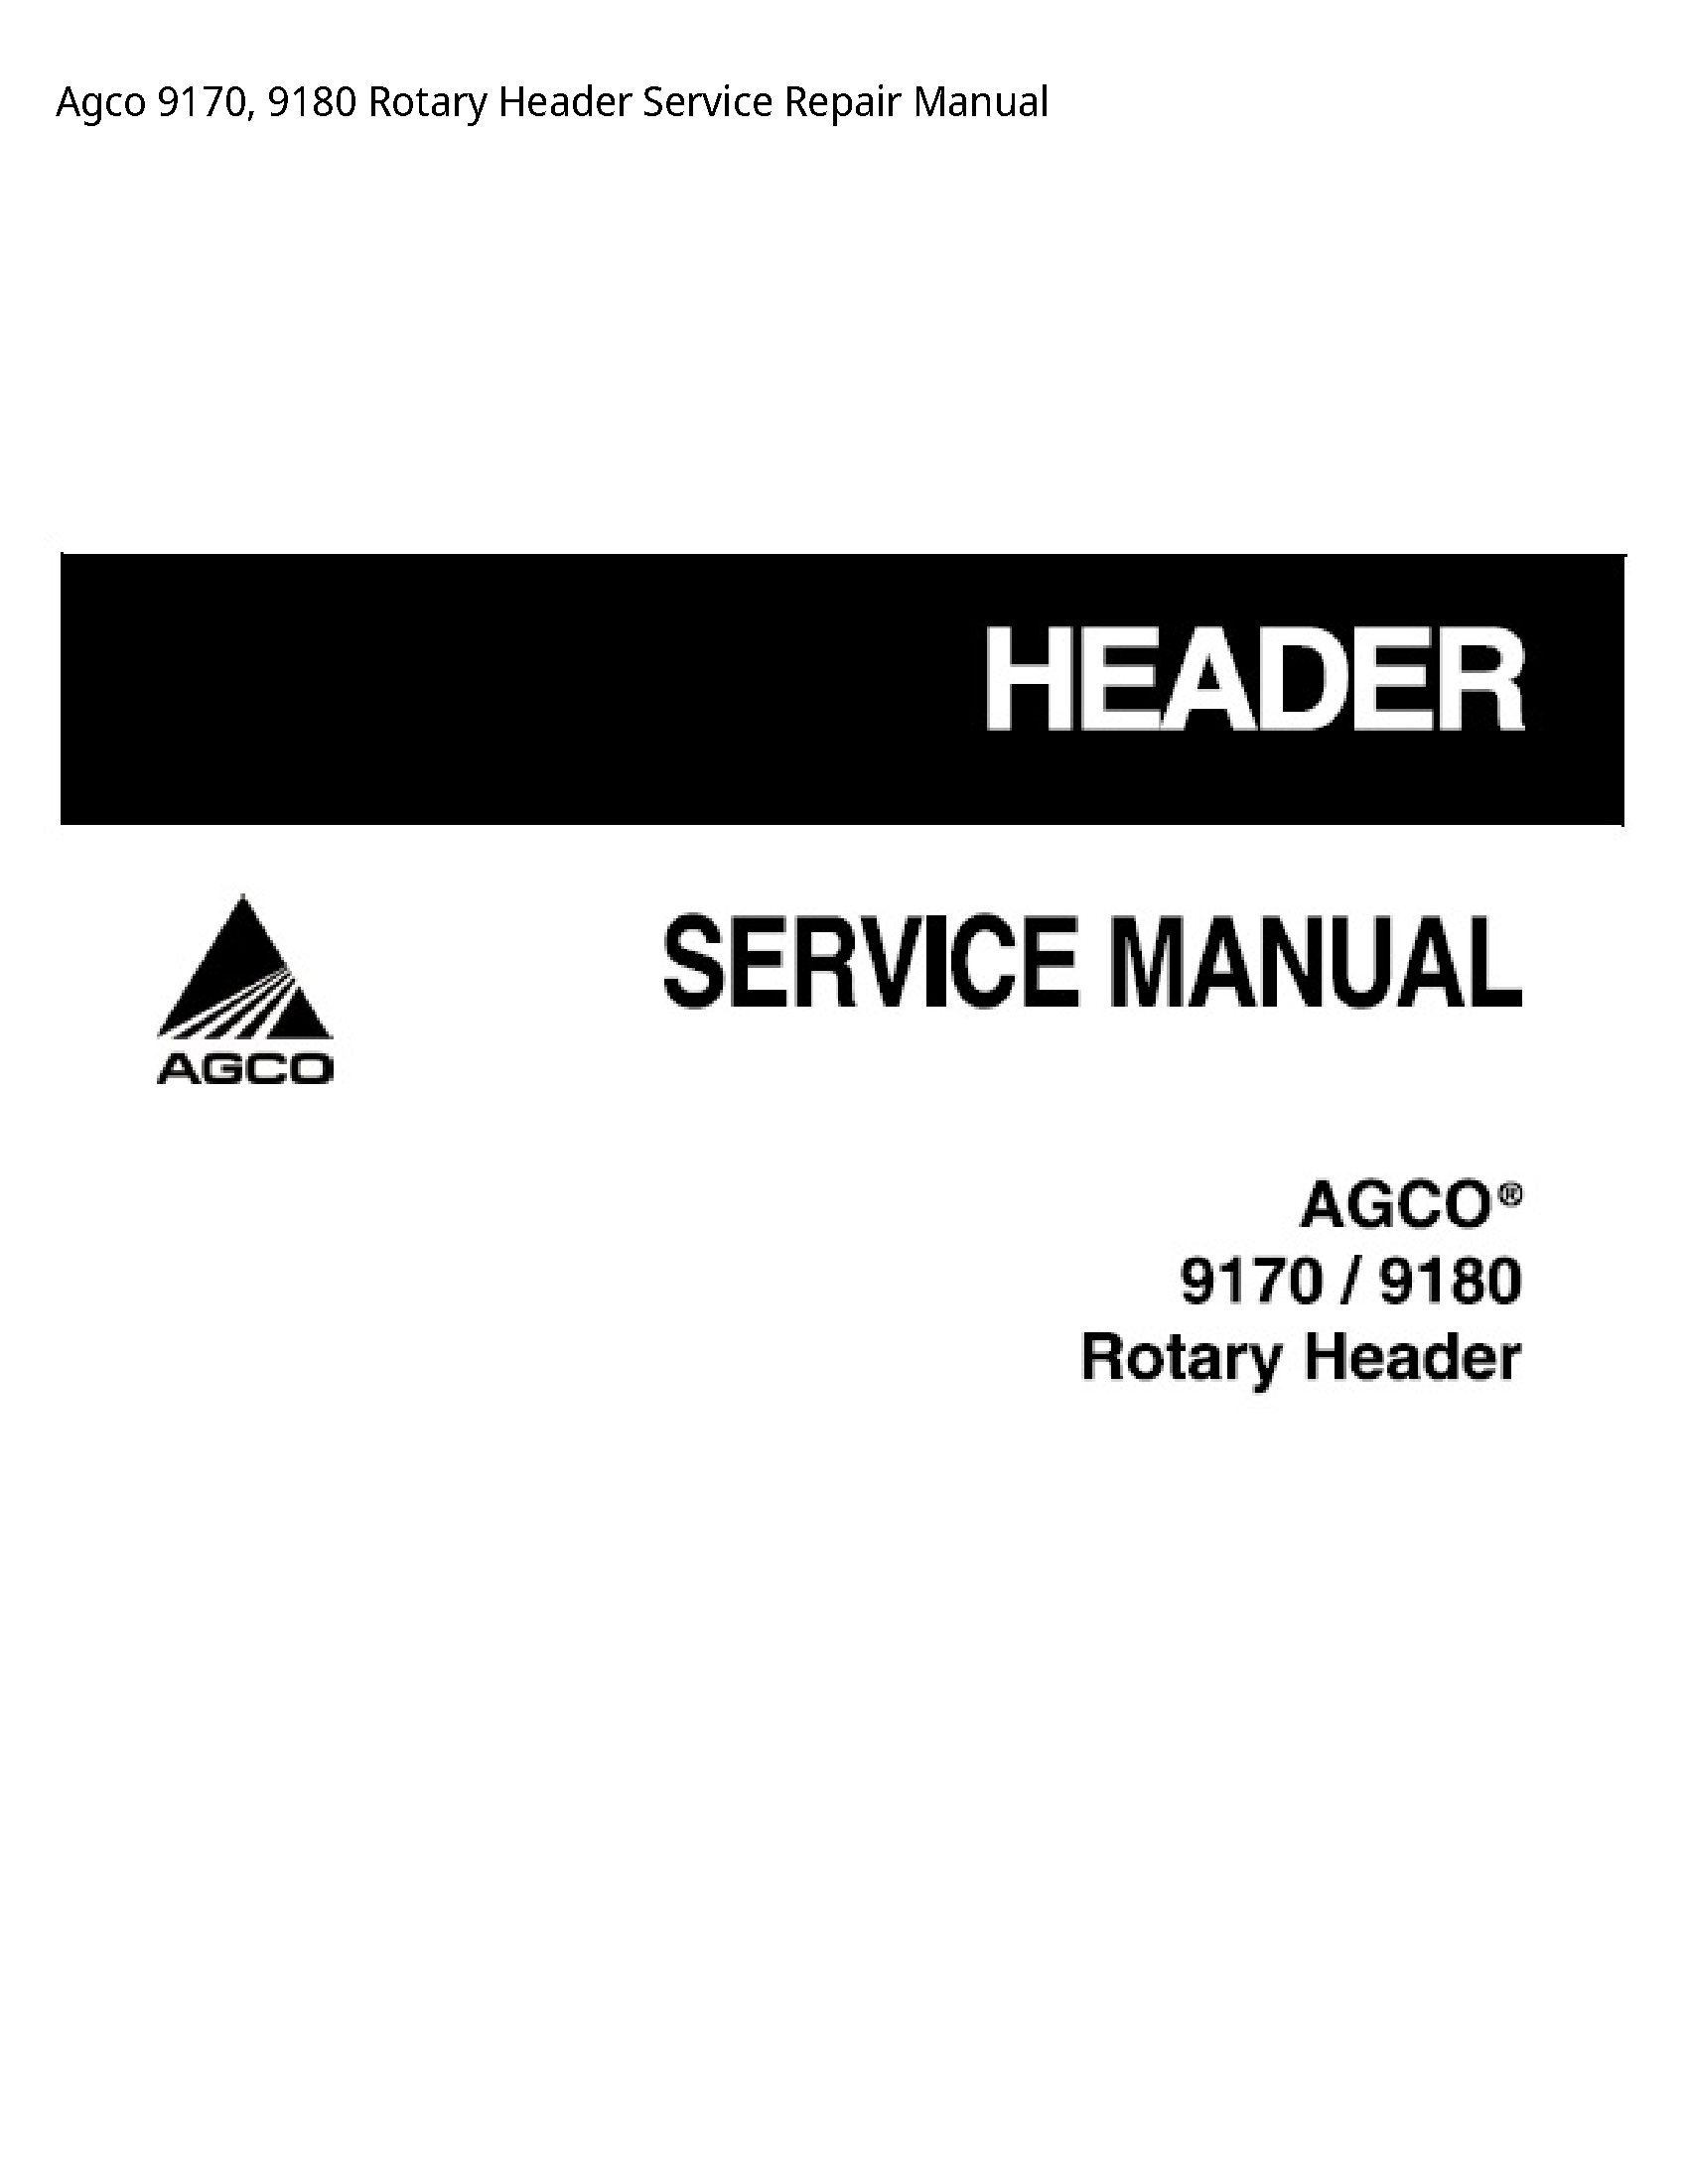 AGCO 9170 Rotary Header manual